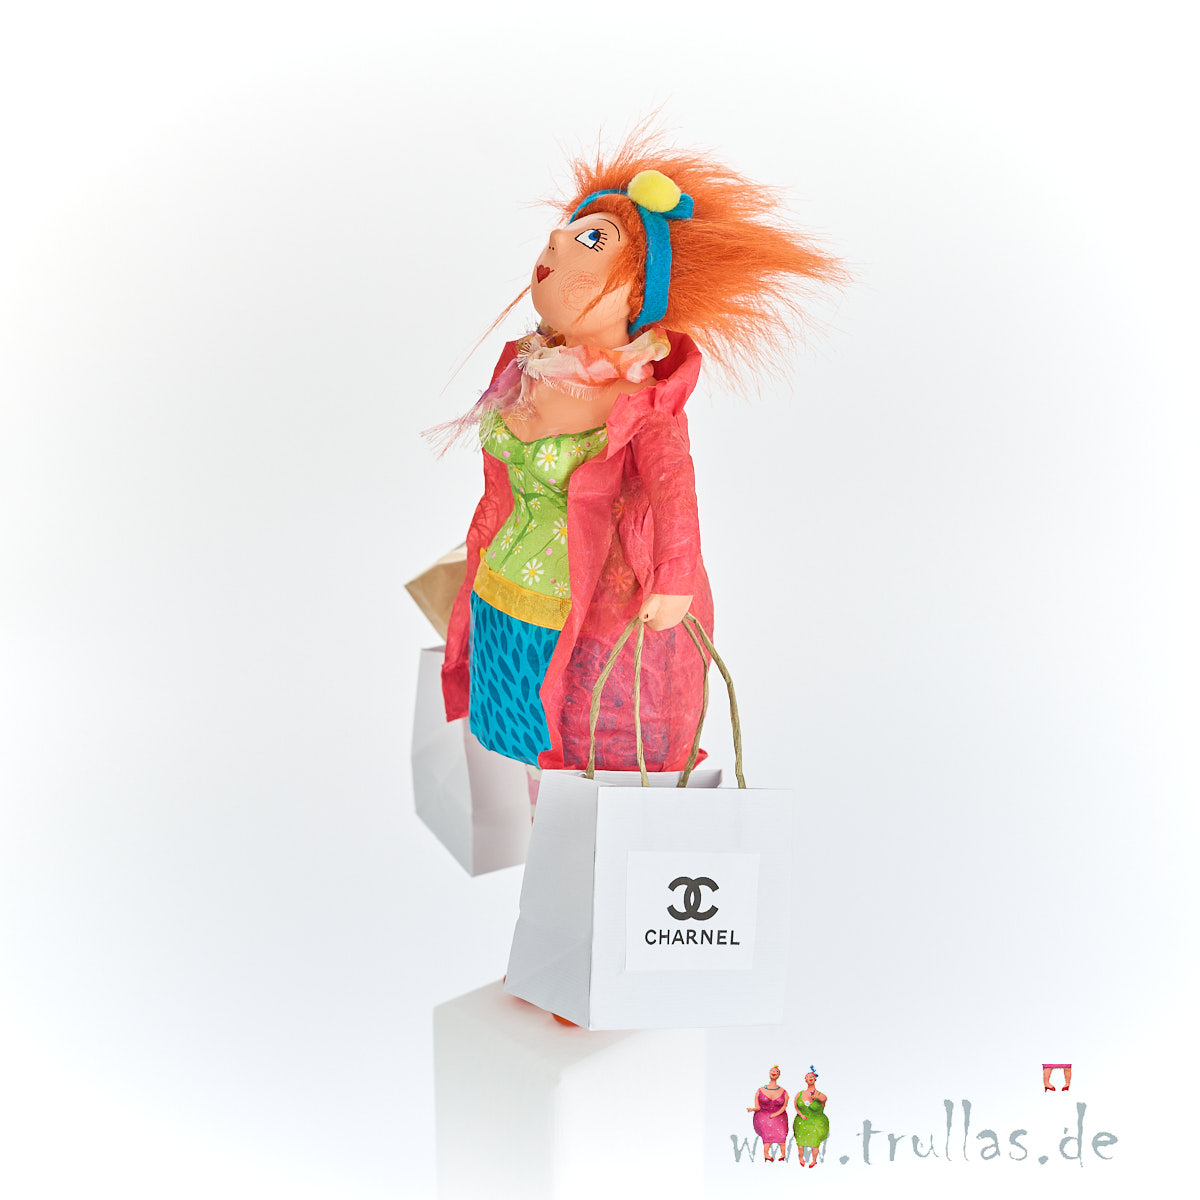 Shopping-Trulla - Jenny ist eine handgefertigte Figur aus Pappmachee. Trullas sind Geschenkideen fur Menschen die handgemachte Kunst schätzen.